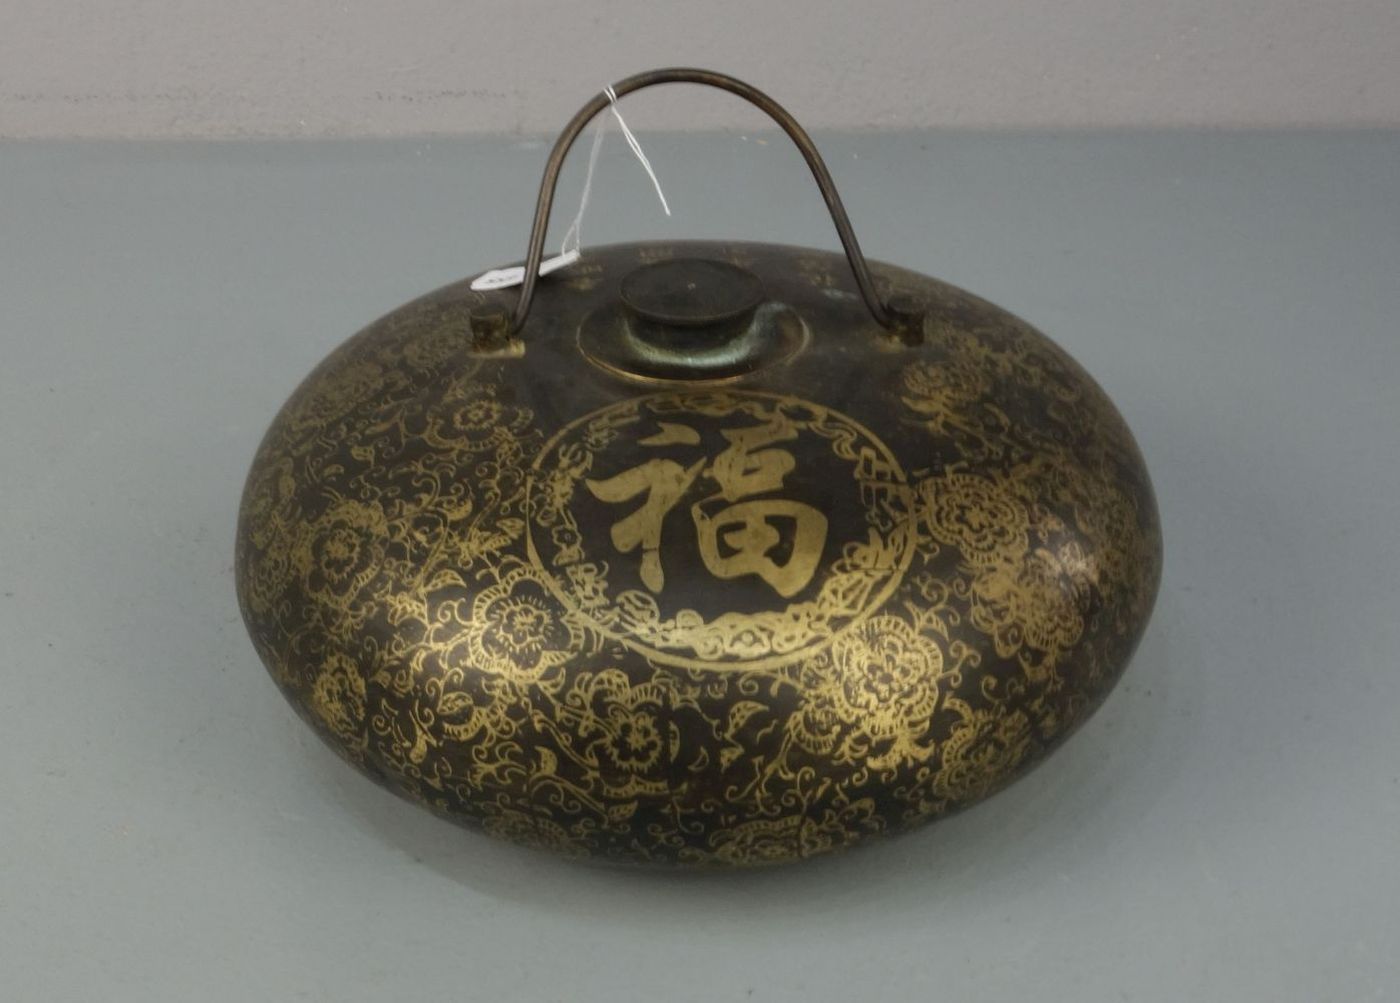 CHINESISCHE WÄRMFLASCHE / hot-water bottle, China, Anfang 20. Jh., Bronze braun patiniert und in